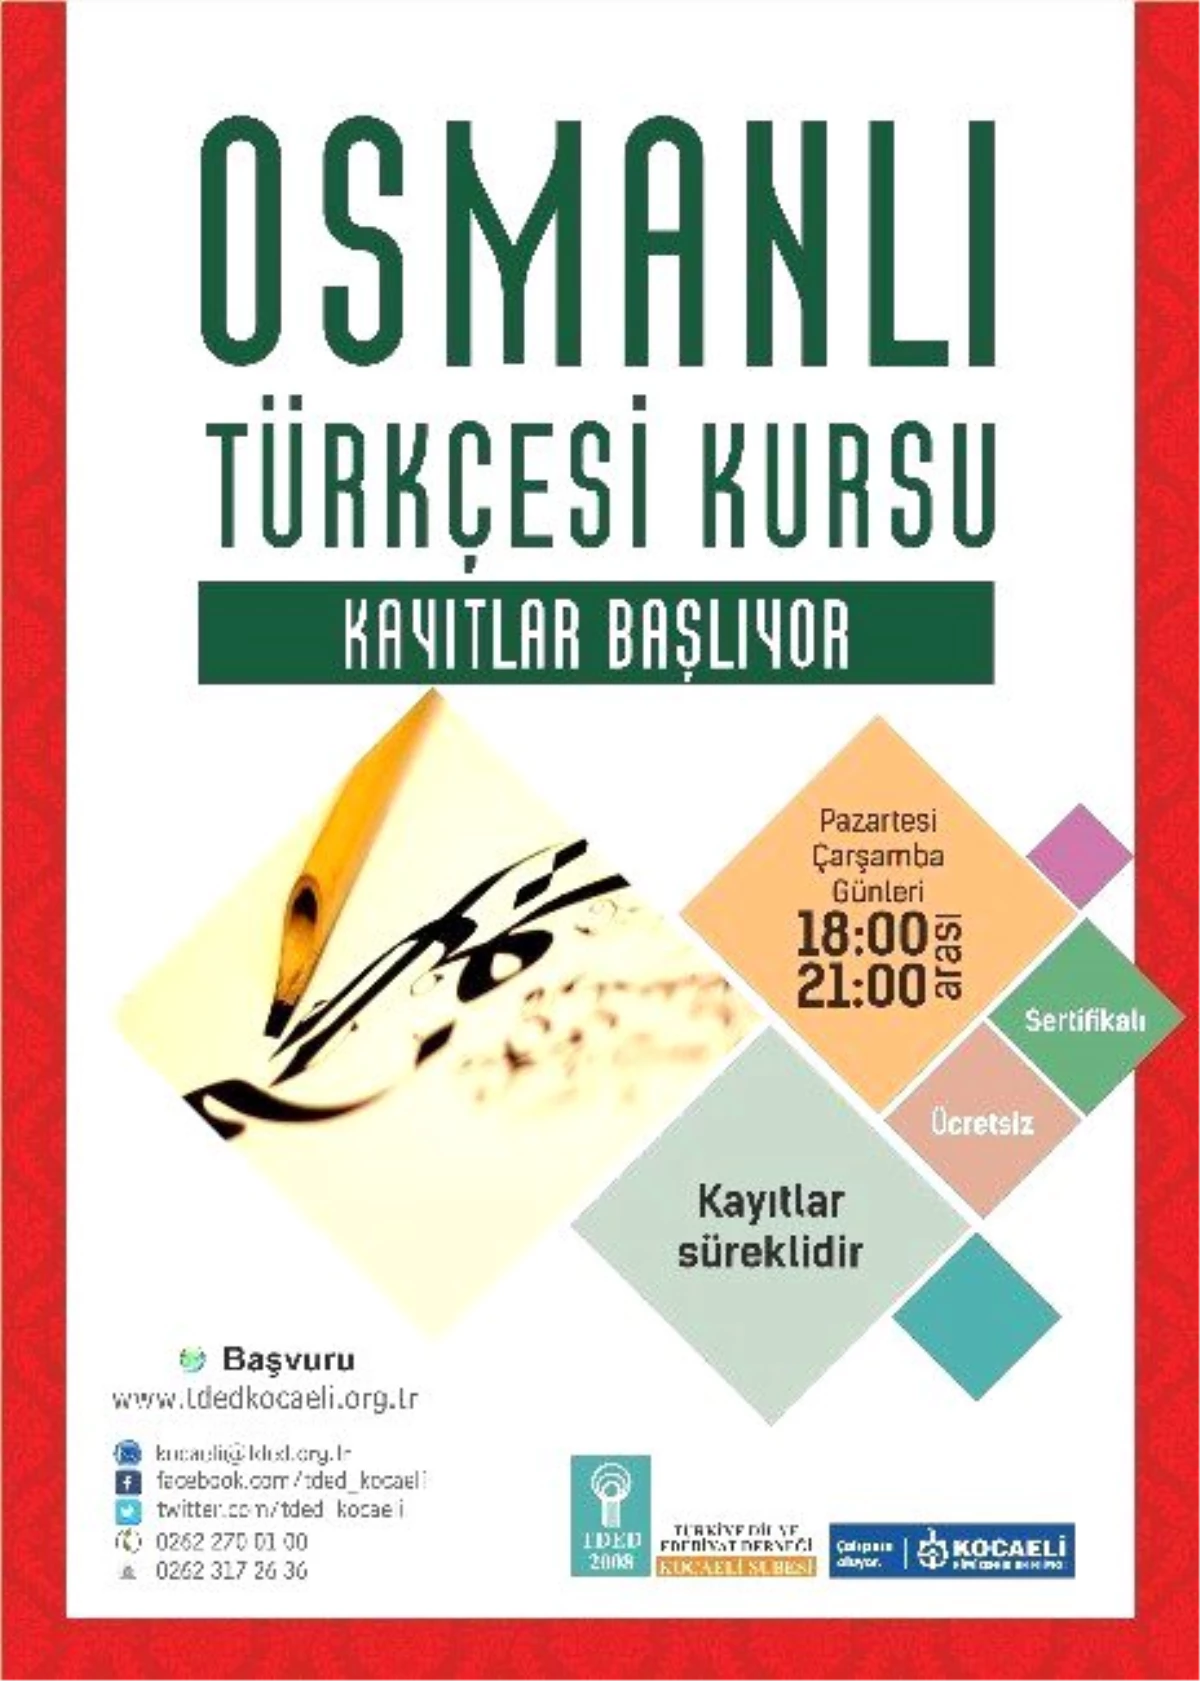 Osmanlı Türkçesi Nisan Dönemi Kurs Başvuruları Başladı